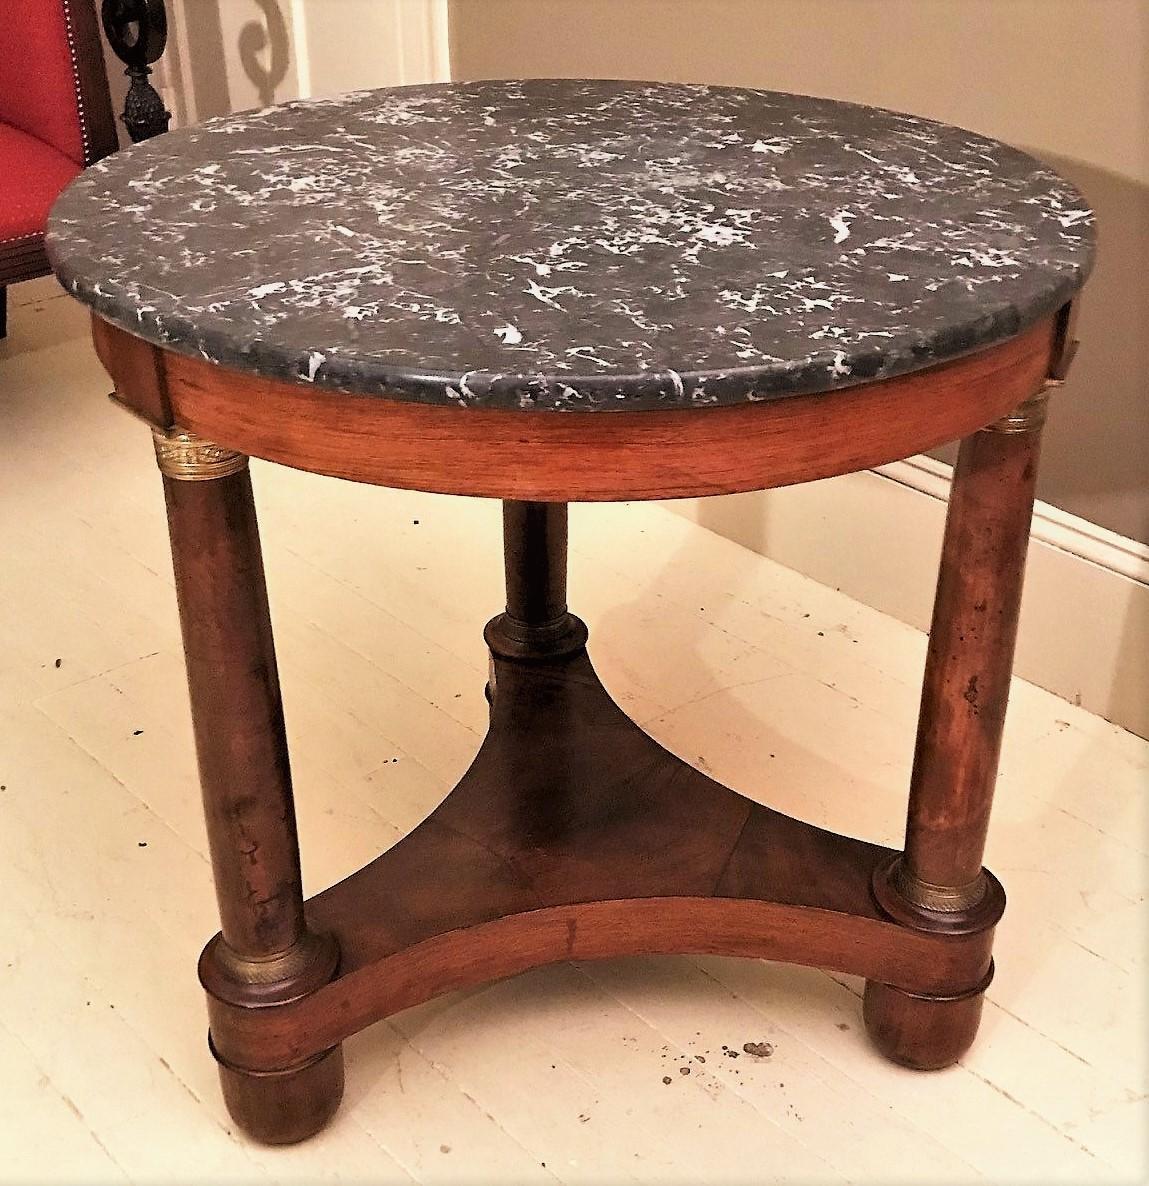 Dieser Tisch ist ein hervorragendes Beispiel für napoleonisches Möbeldesign und auch in der heutigen Wohnung sehr nützlich. Perfekt als Mitteltisch in einem Foyer oder als Beistelltisch im Wohnzimmer. Durch die geringe Größe und die runde Form